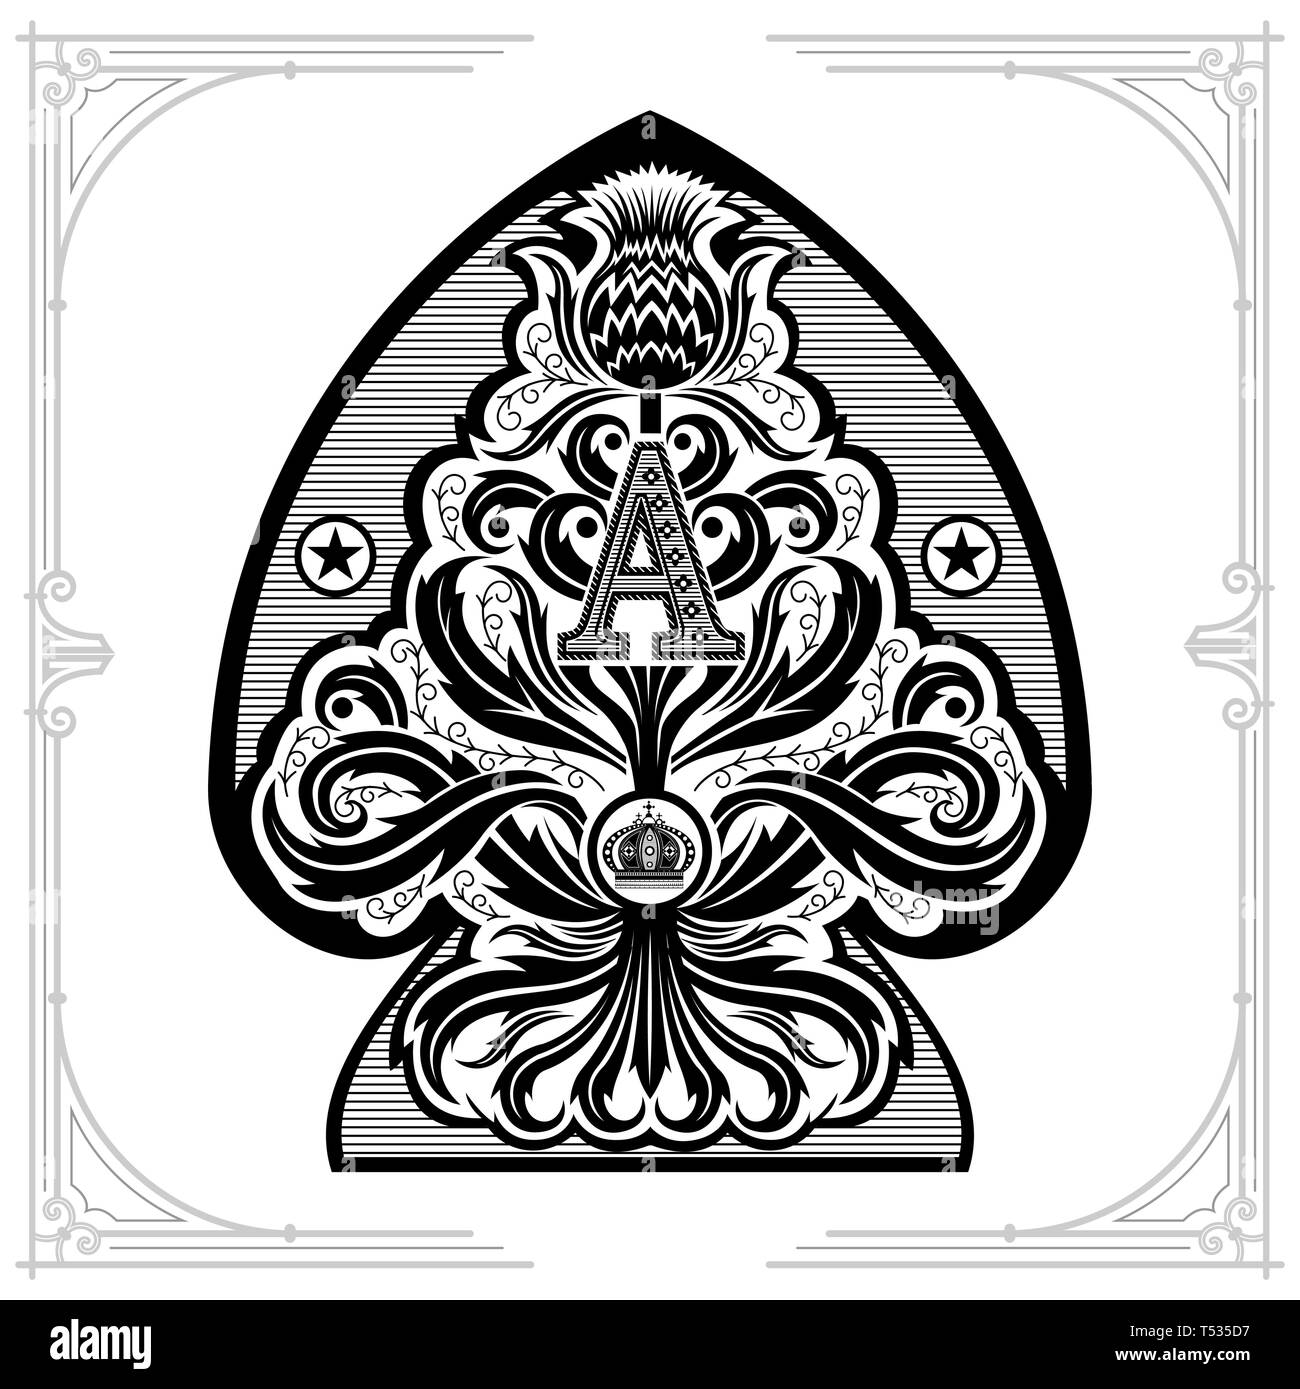 Ace of Spades von Thistle florales Muster mit Buchstaben A und Krone im Inneren. Design Element, schwarz auf weiß Stock Vektor